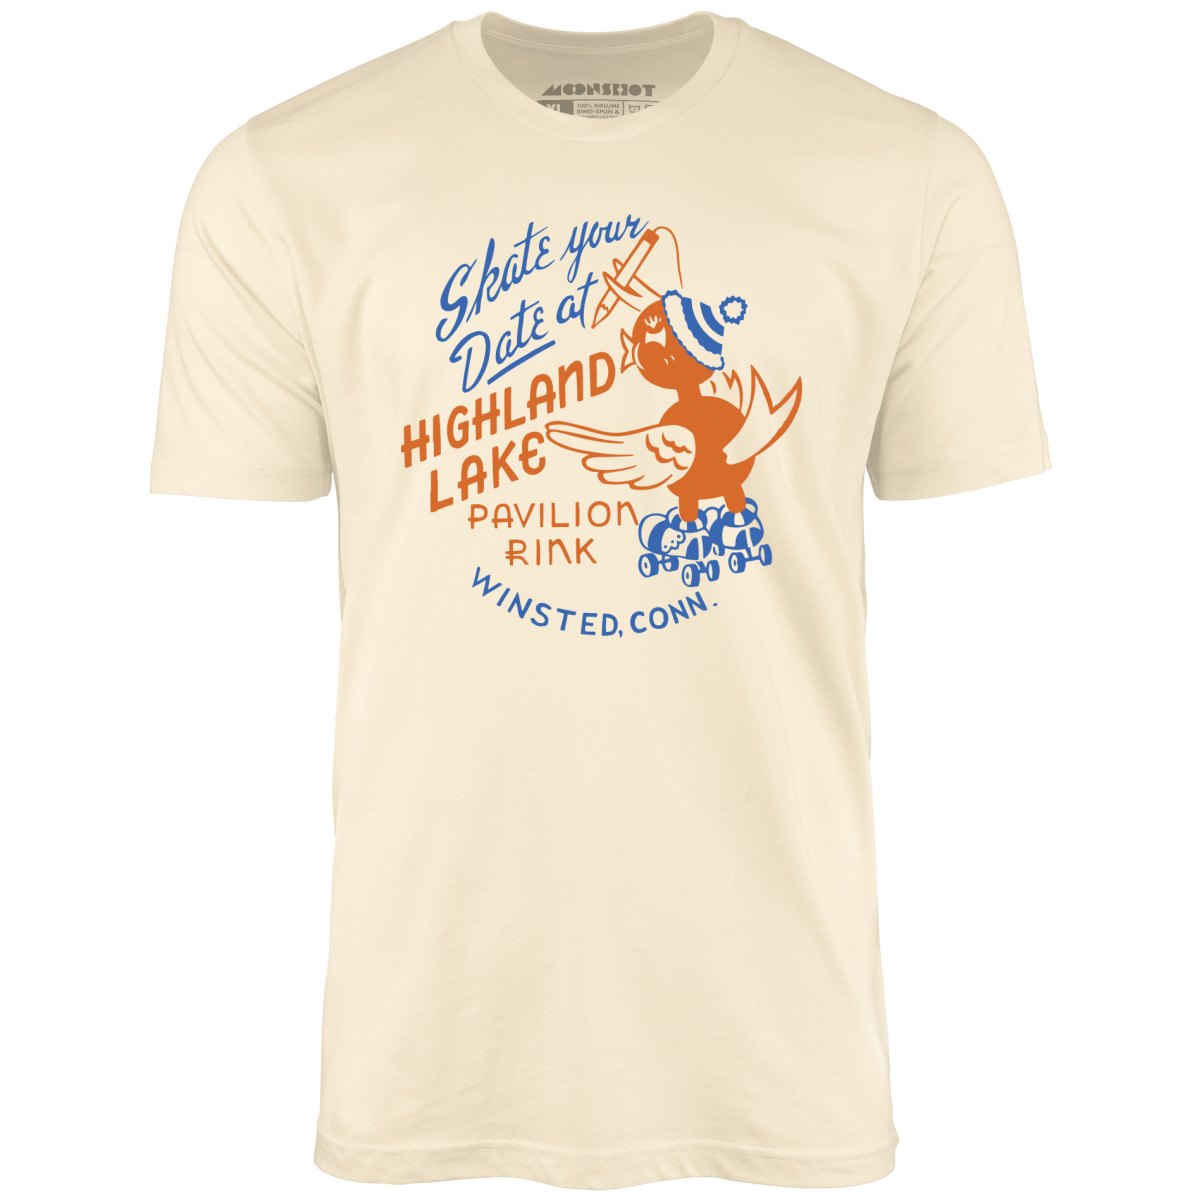 Highland Lake Pavilion Rink - Winsted, CT - Vintage Roller Rink - Unisex T-Shirt